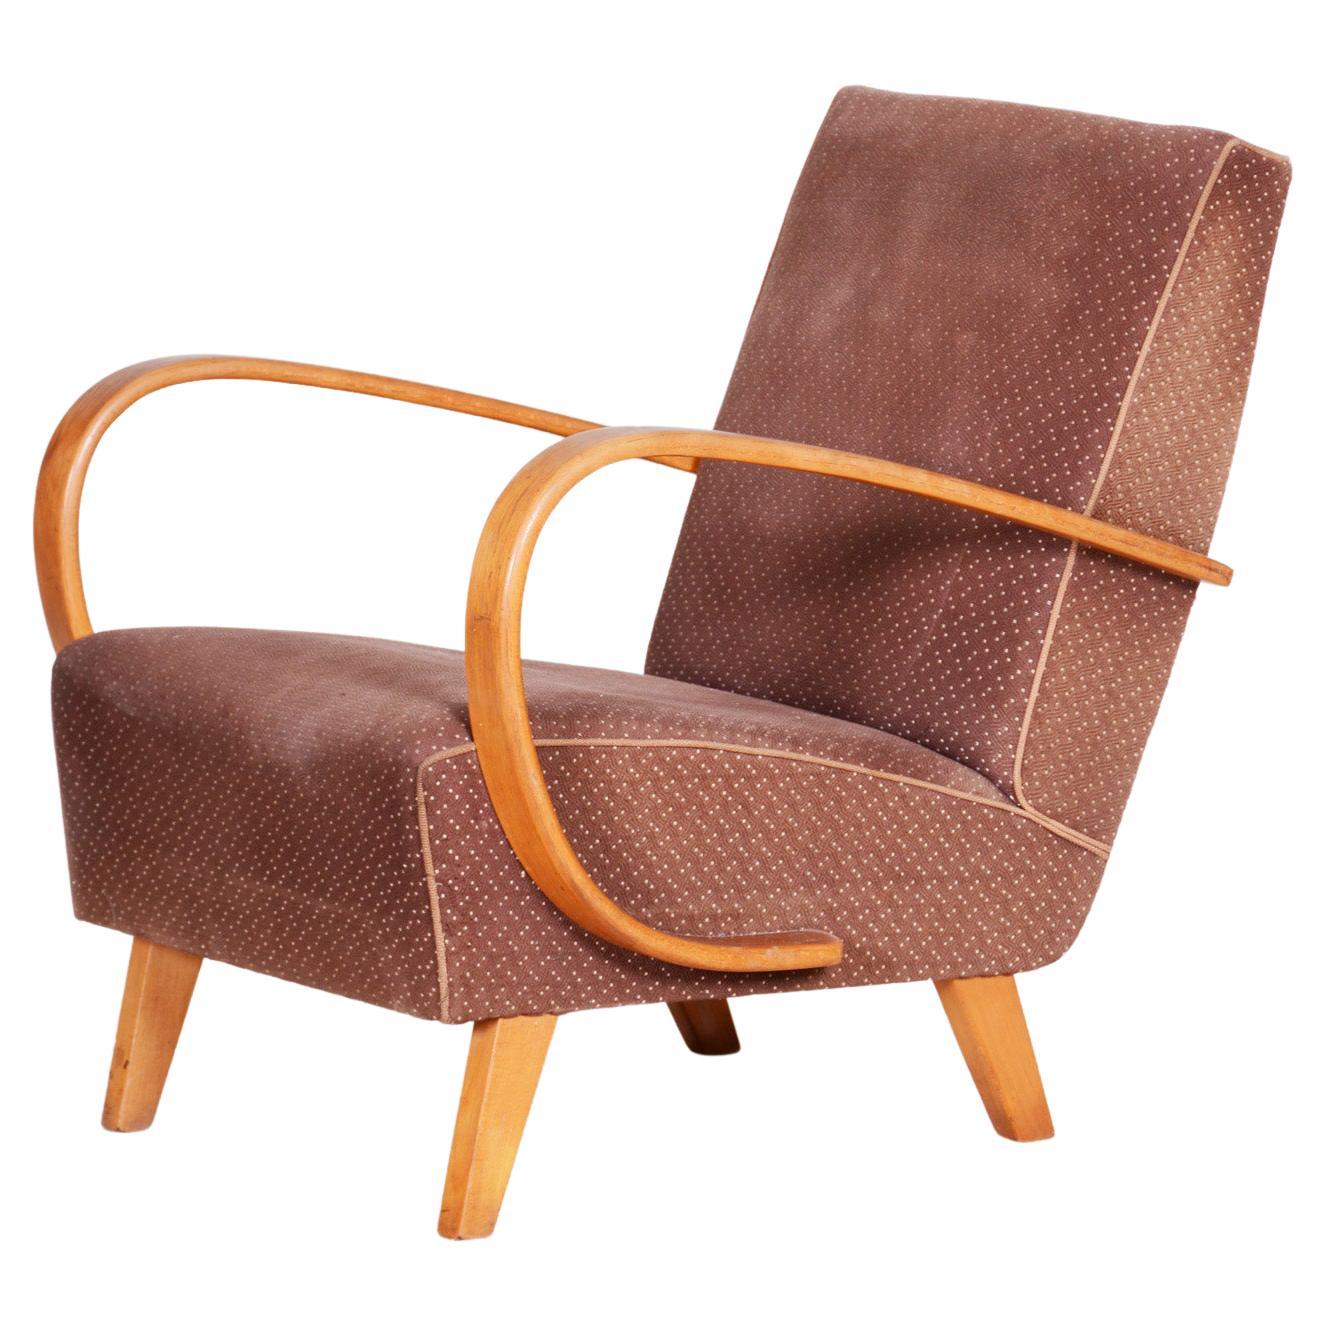 Brauner Sessel, hergestellt in Tschechien, 1930er Jahre, Originalzustand, Art-Déco-Stil